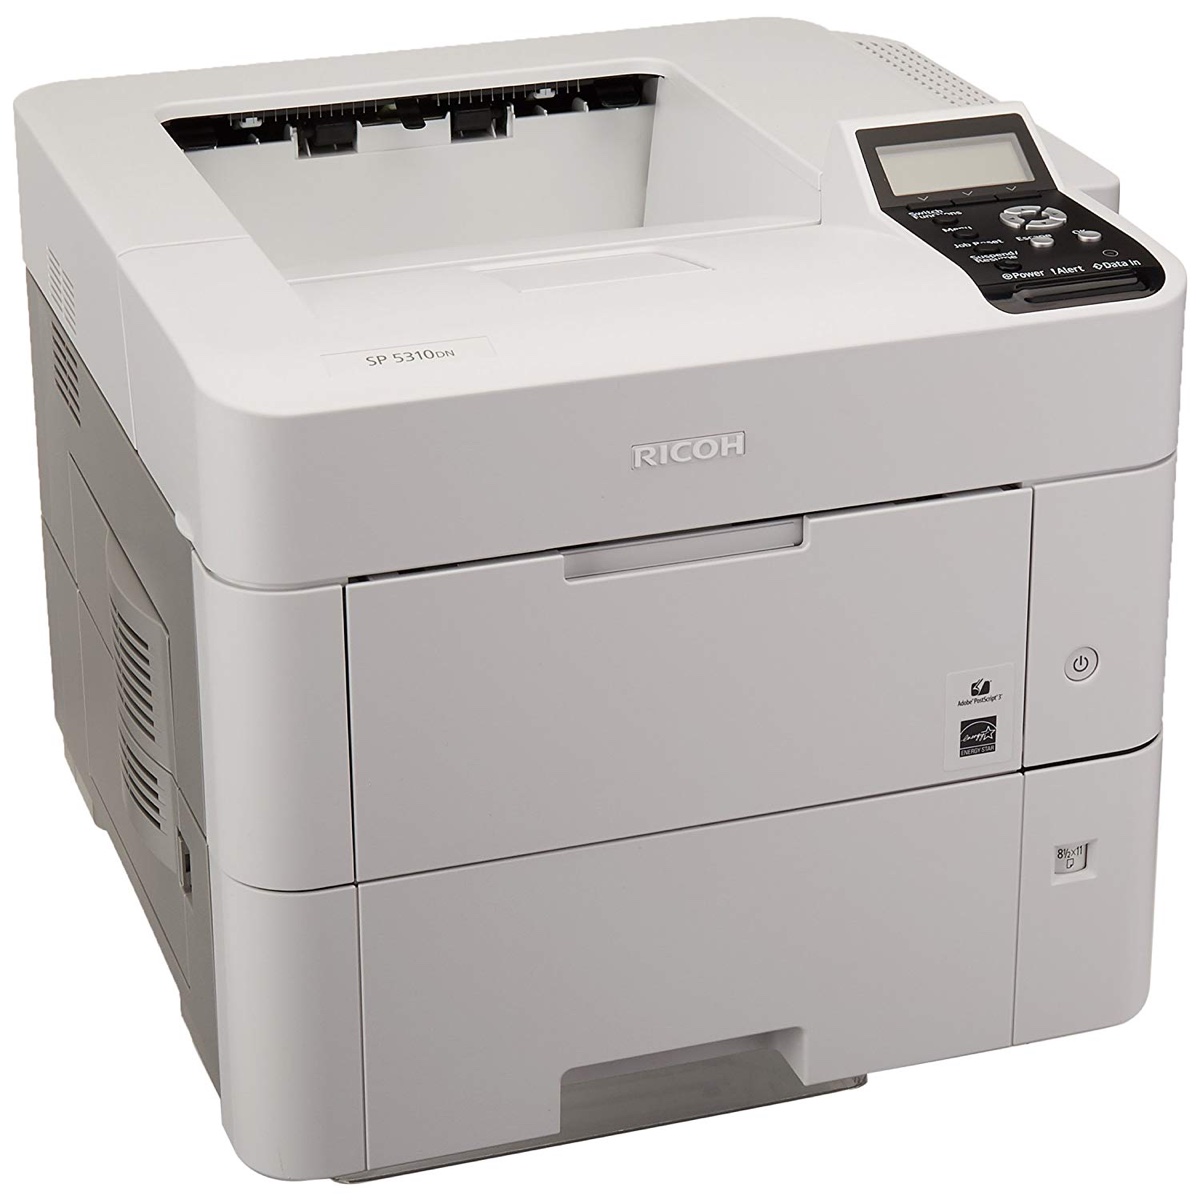 Ricoh Printers:  The Ricoh SP 5310DN Printer